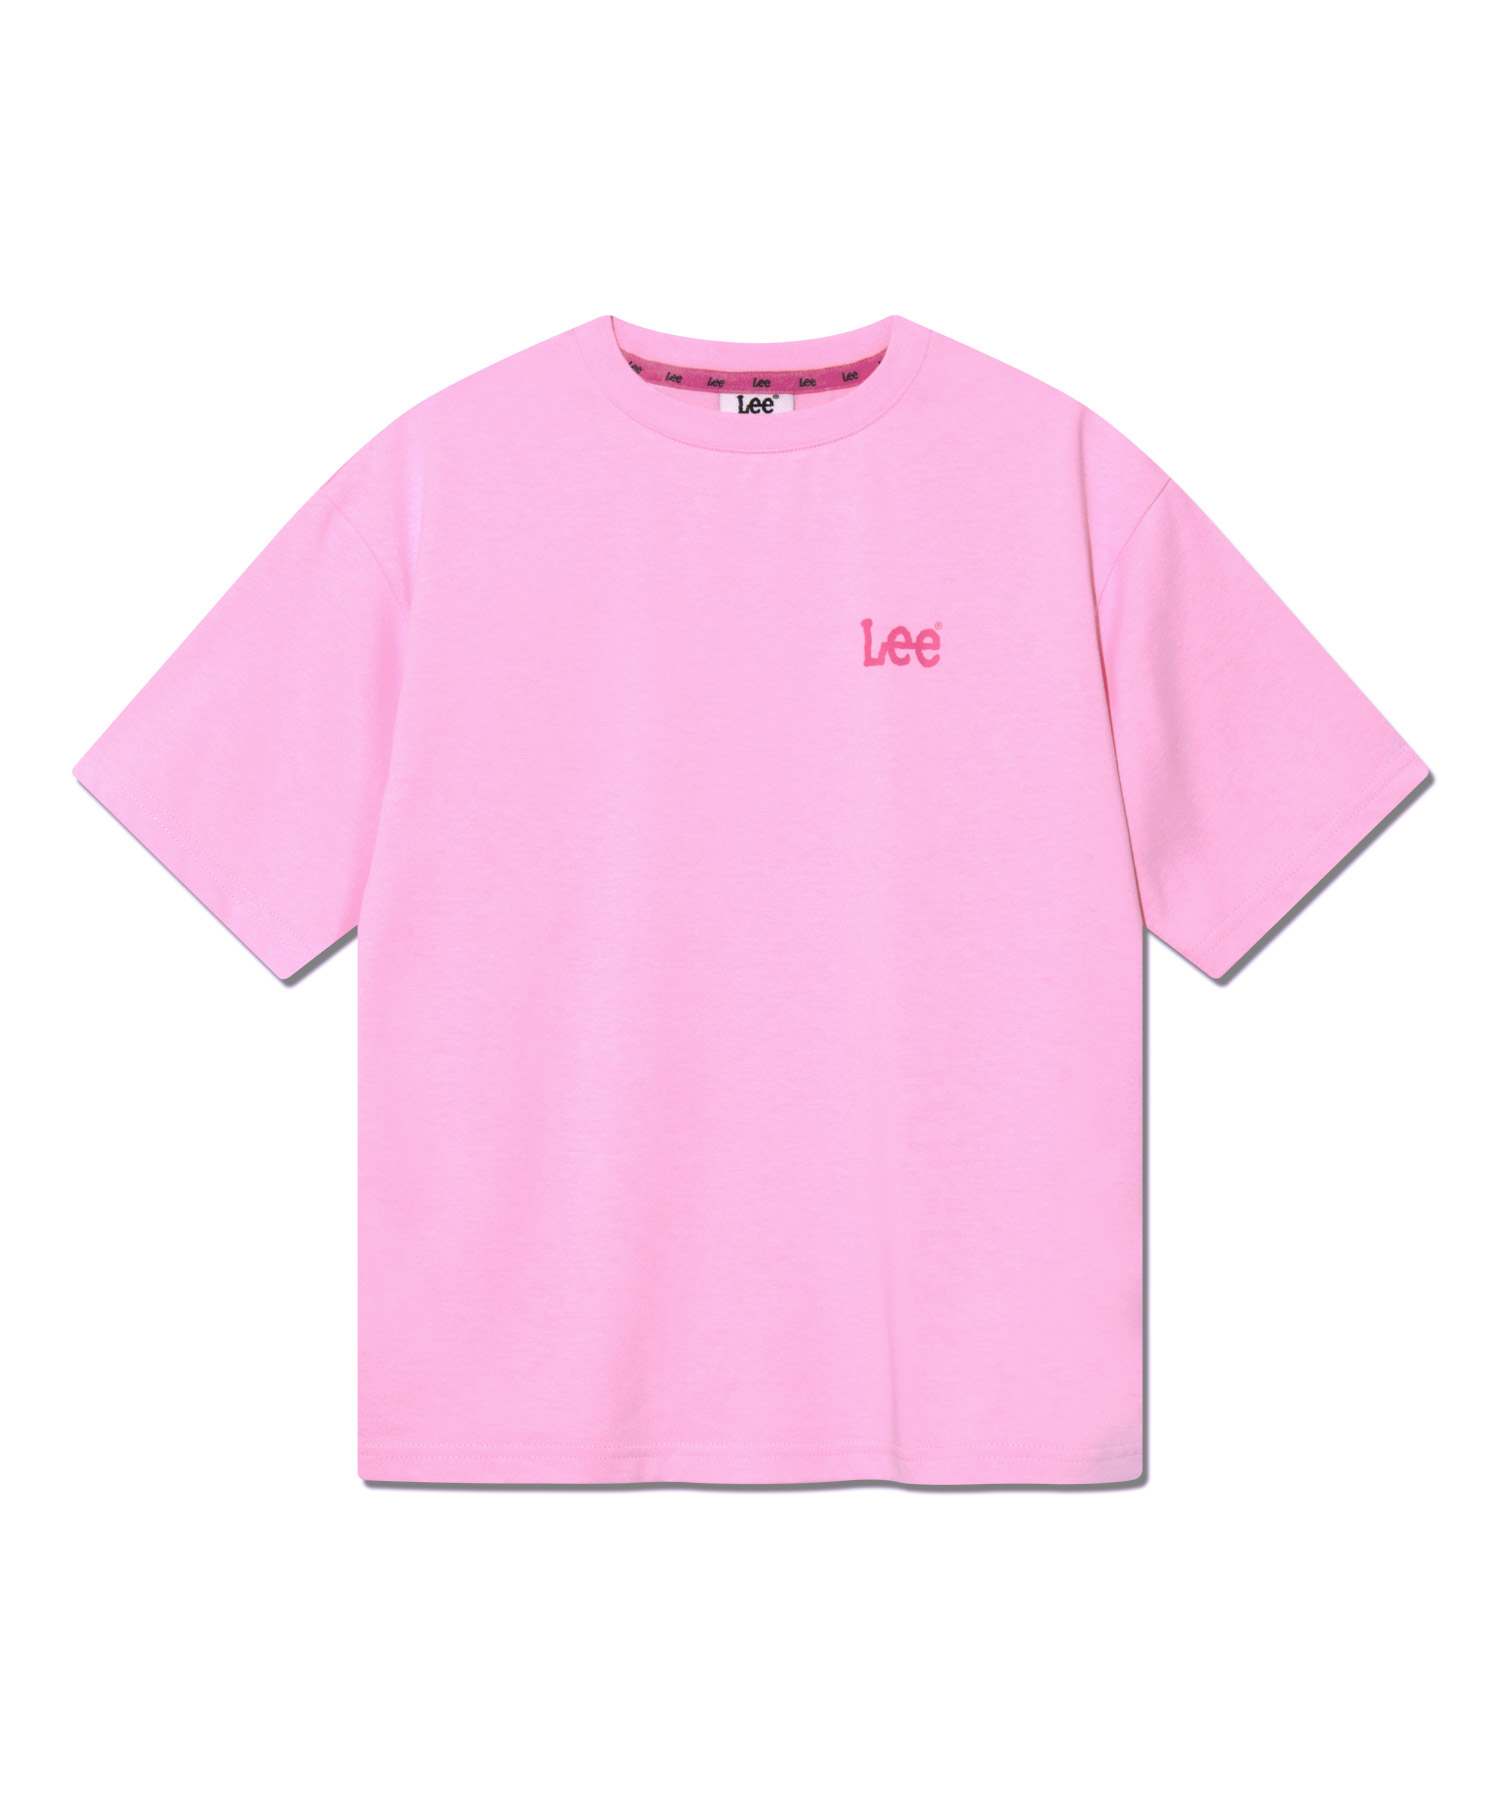 키즈 스몰 트위치 로고 반팔 티셔츠 핑크